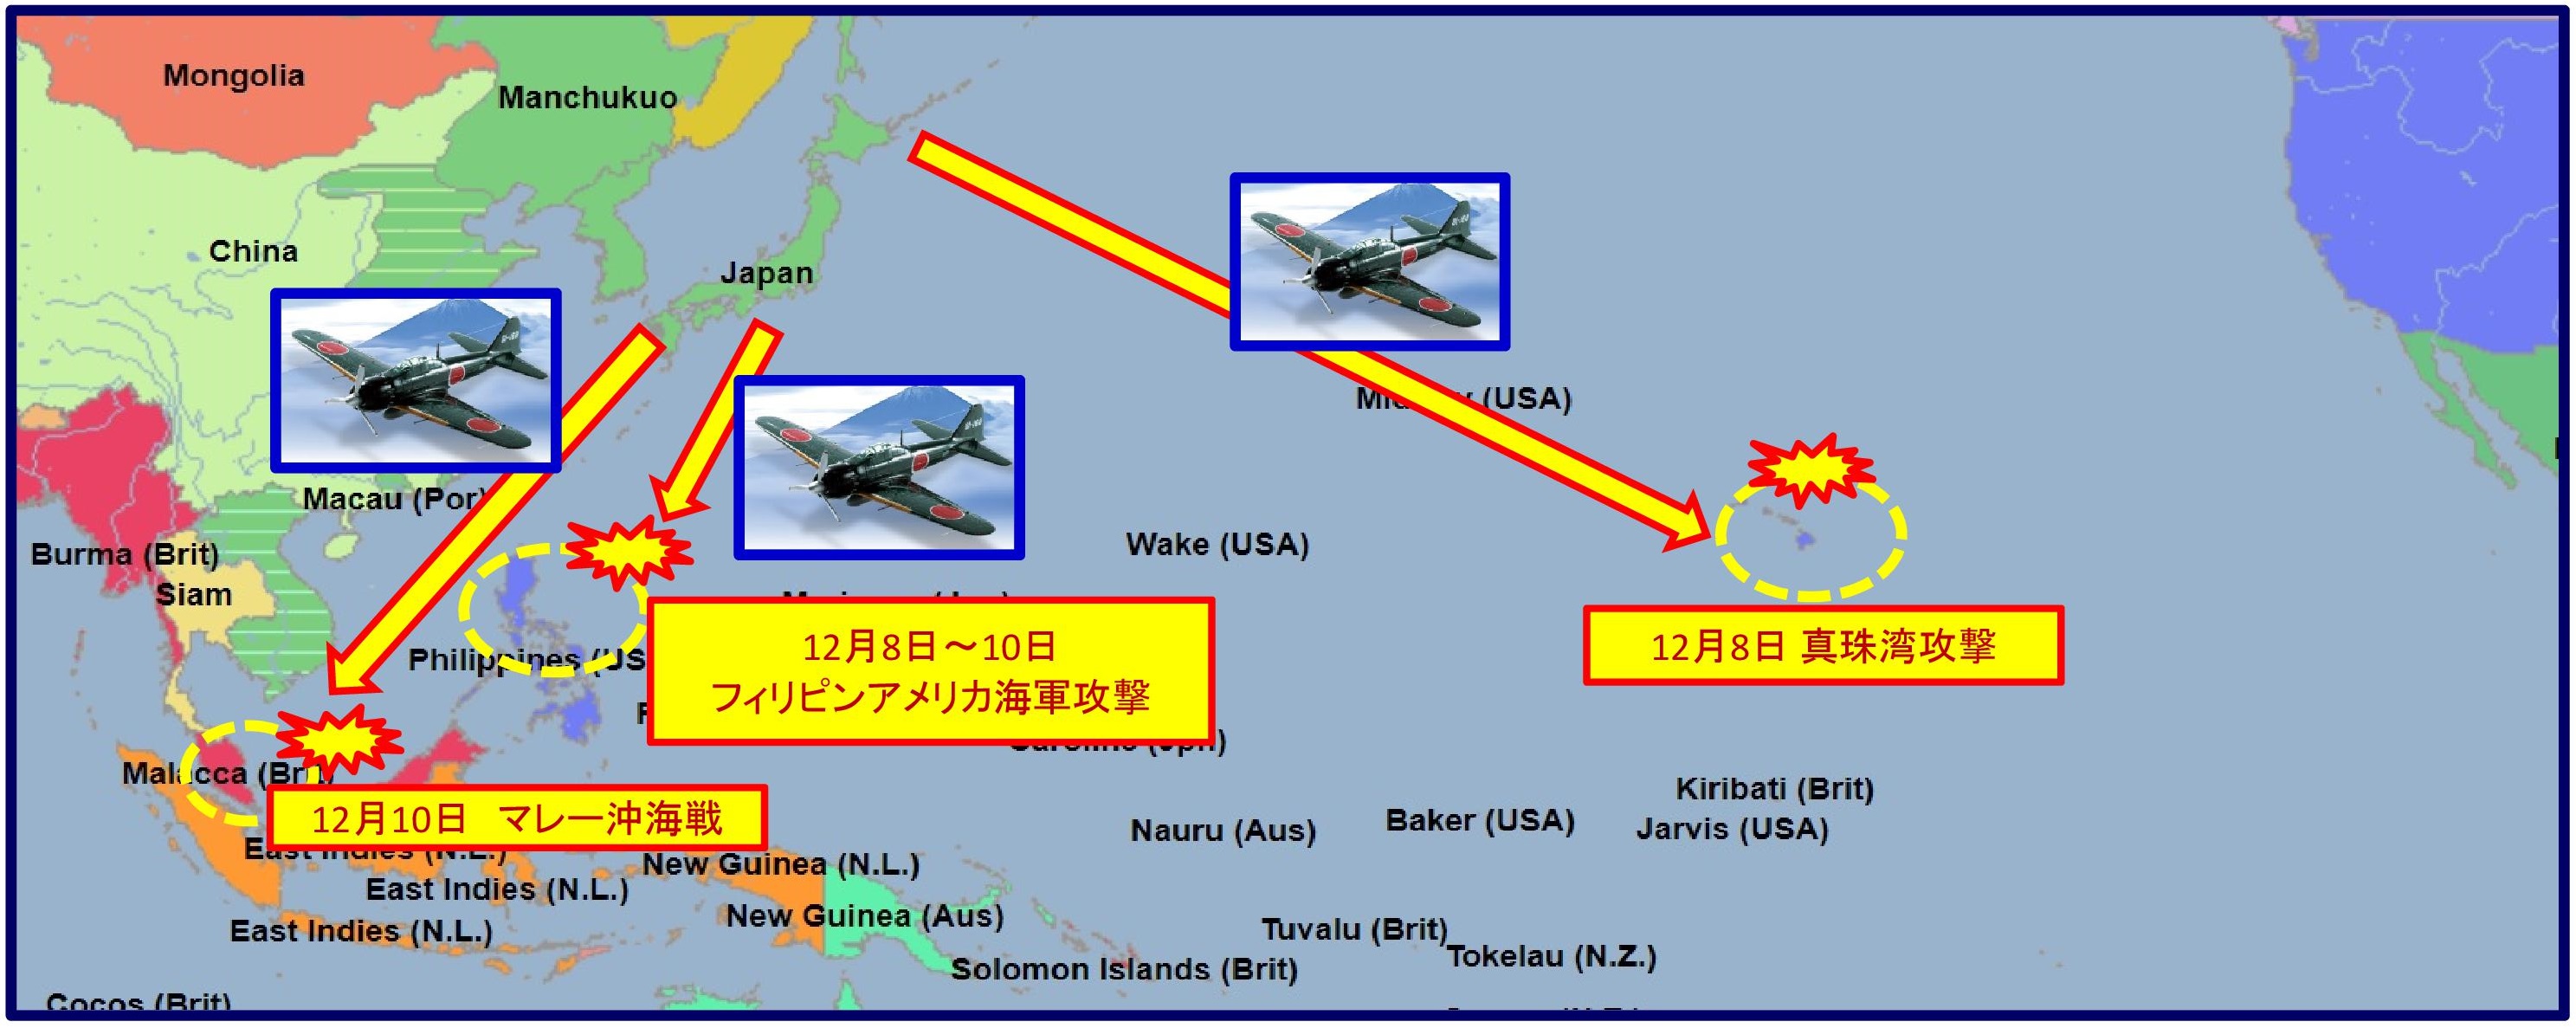 真珠湾攻撃、フィリピン海戦、マレー沖海戦